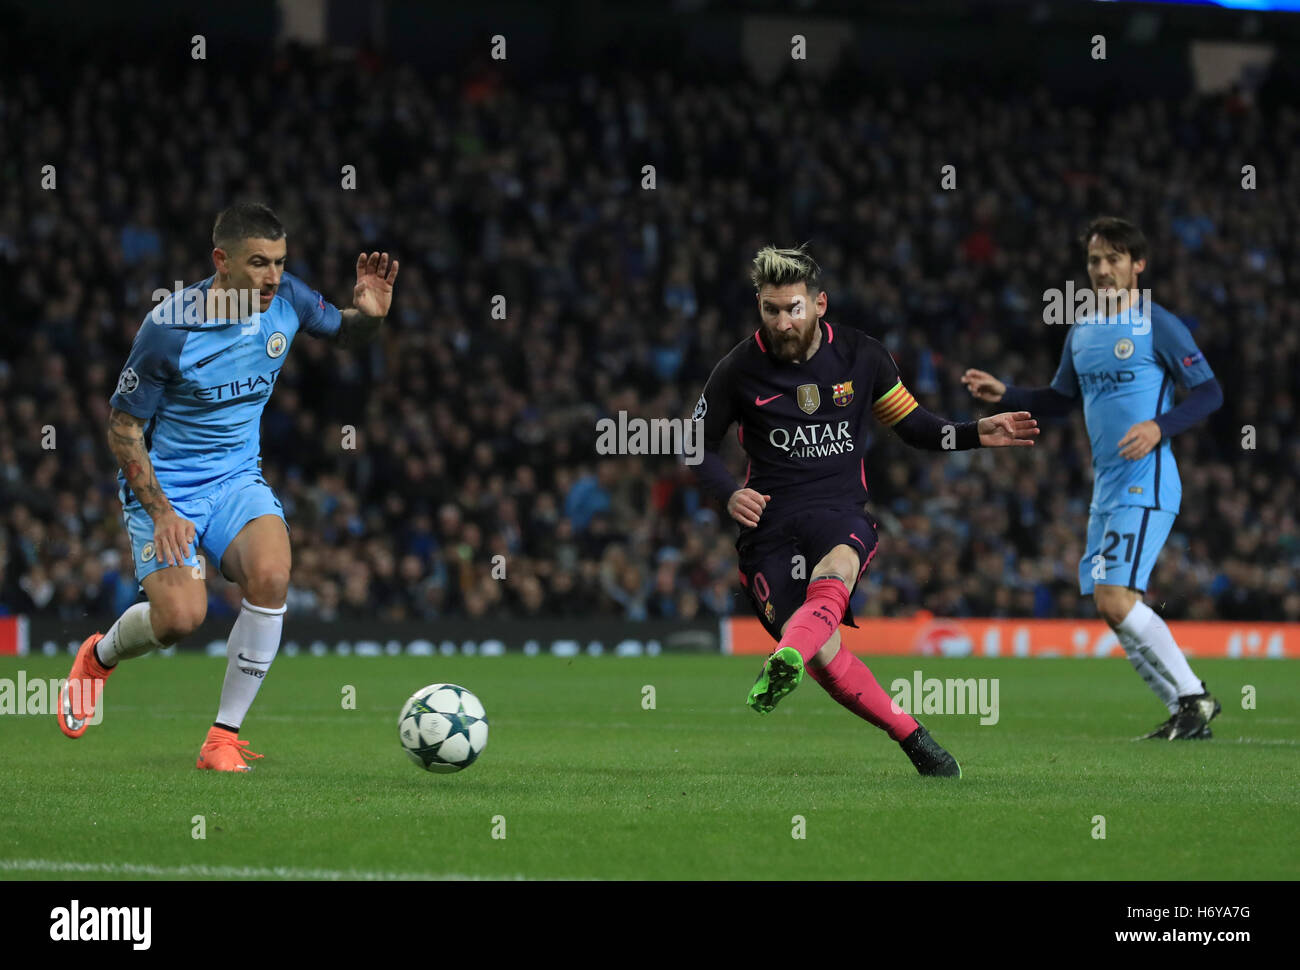 La Barcelone Lionel Messi marque son premier but de côtés du jeu pendant le match de Ligue des Champions de l'Etihad Stadium, Manchester. Banque D'Images